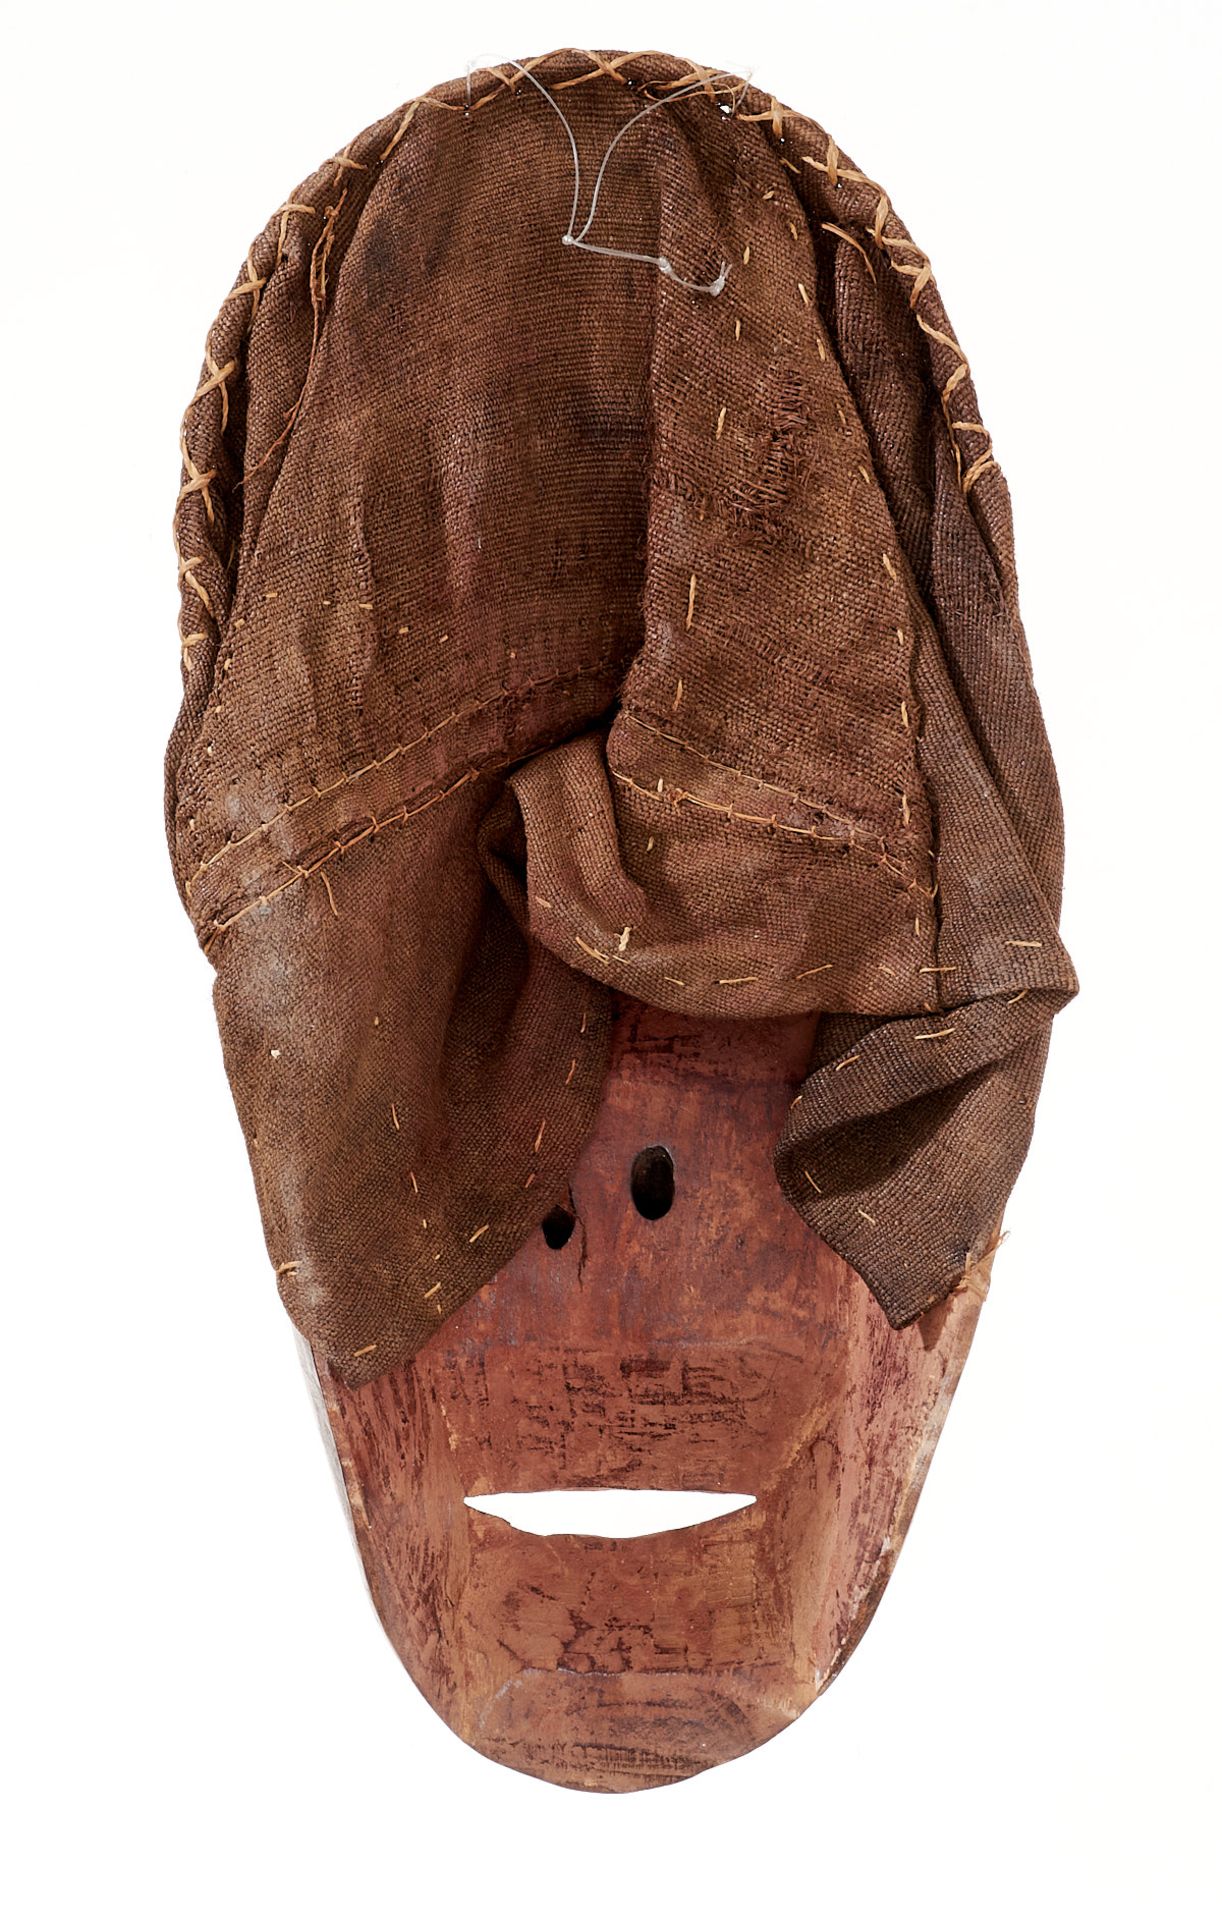 Kunsthandwerk - Afrika - Dekorative Maske. - Holz, schwarz und weiß gefärbt, Raphia-Gewebe. - Image 2 of 4